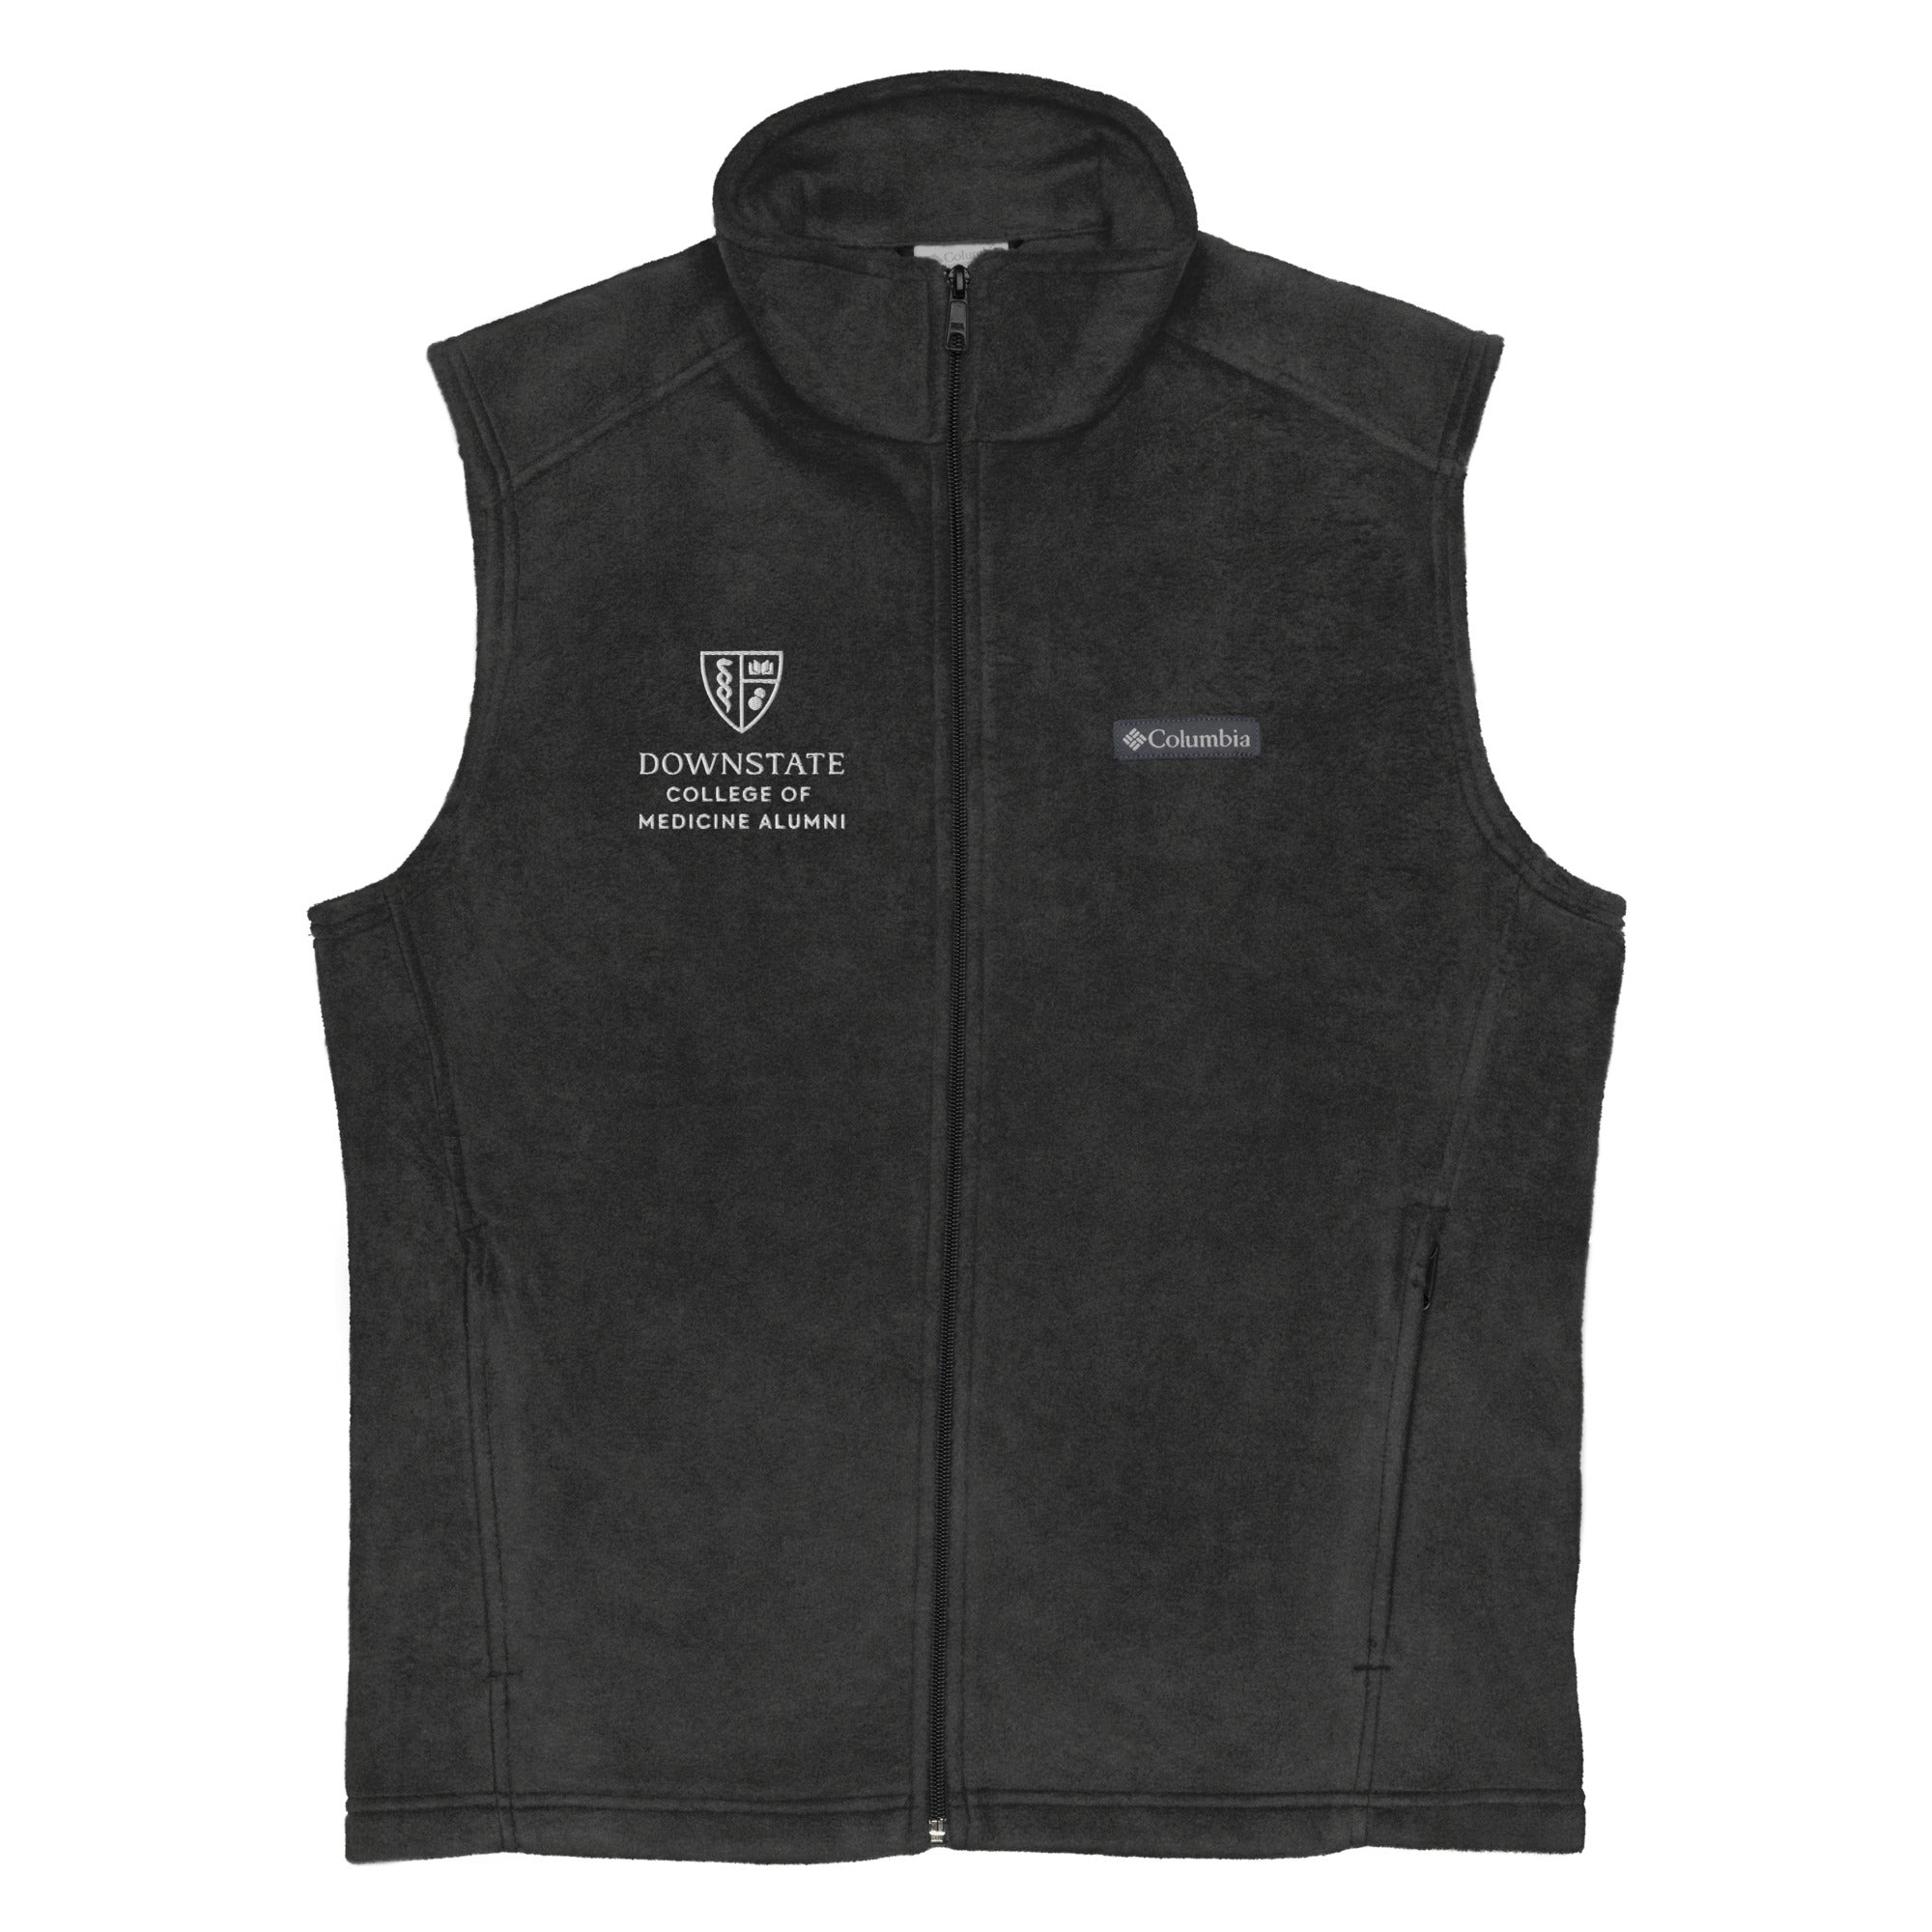 AACMSD Men’s Columbia fleece vest